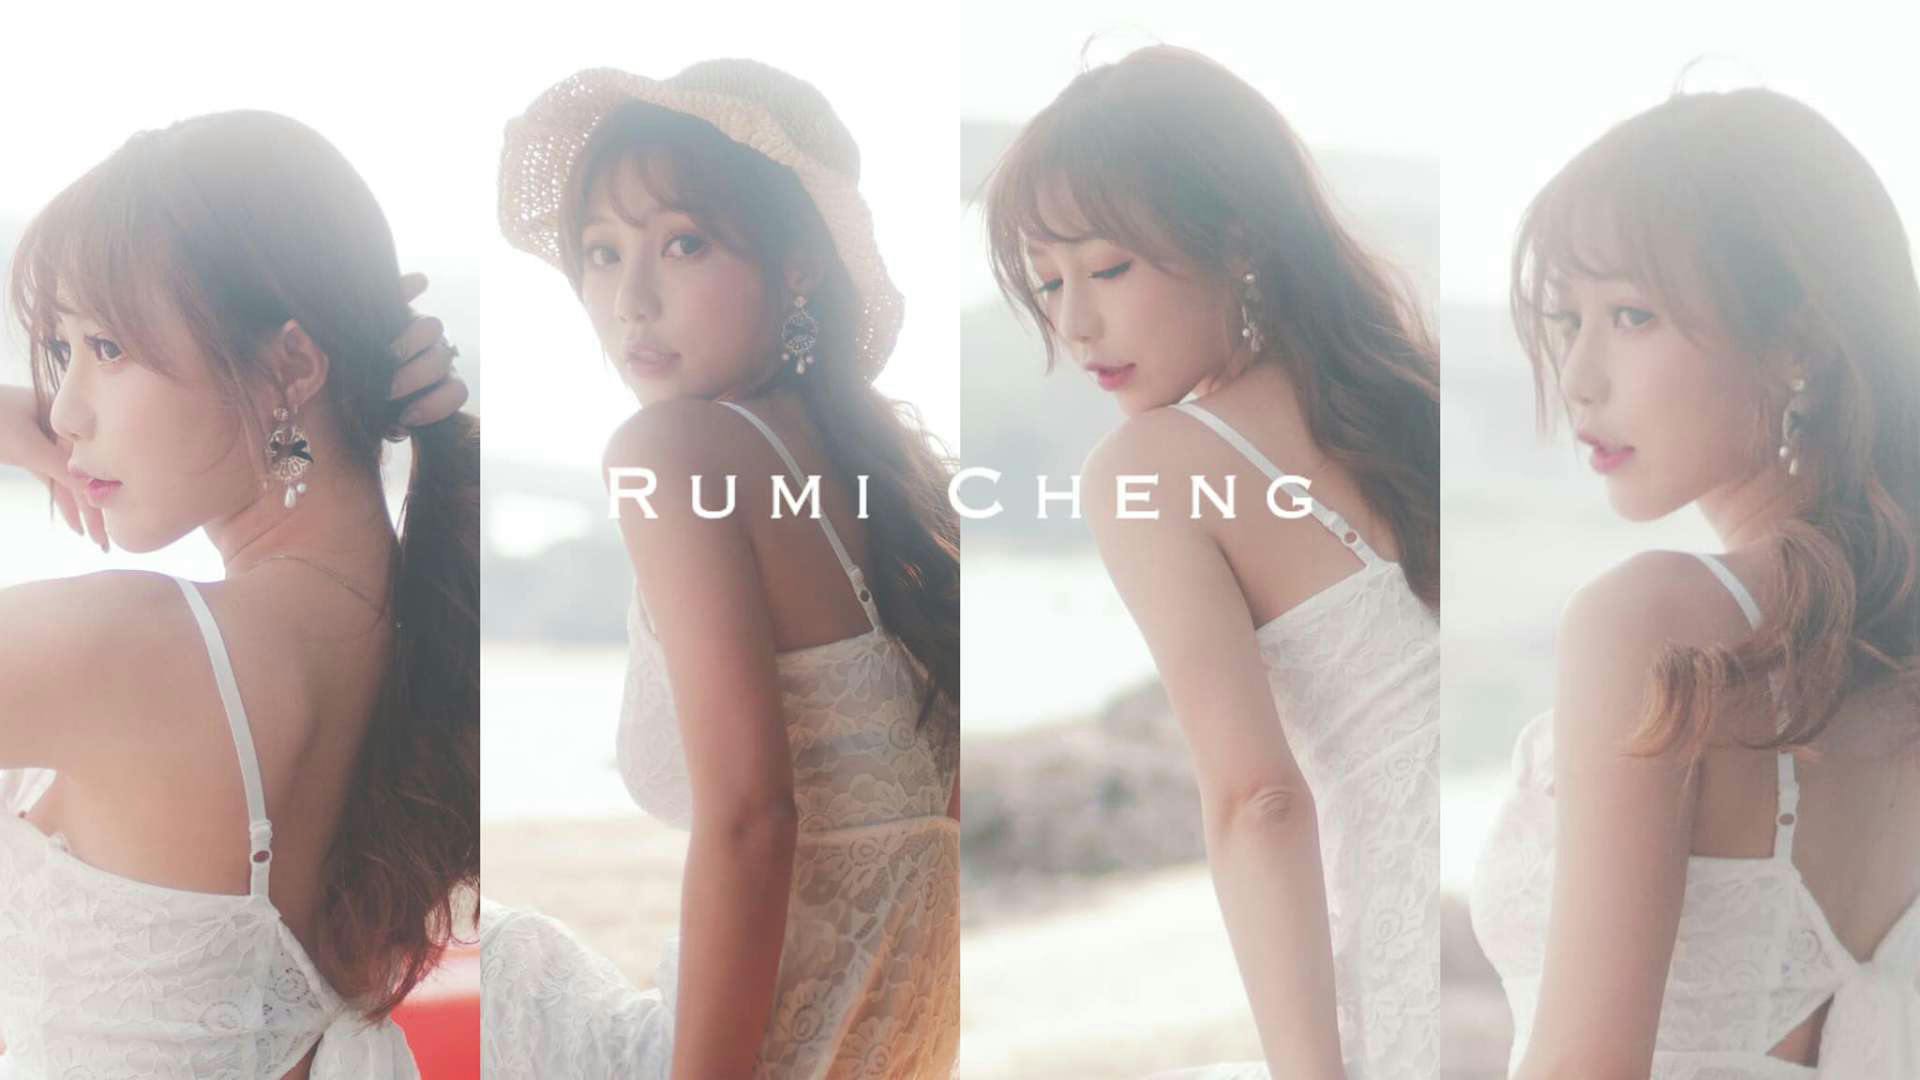 rumi cheng's banner